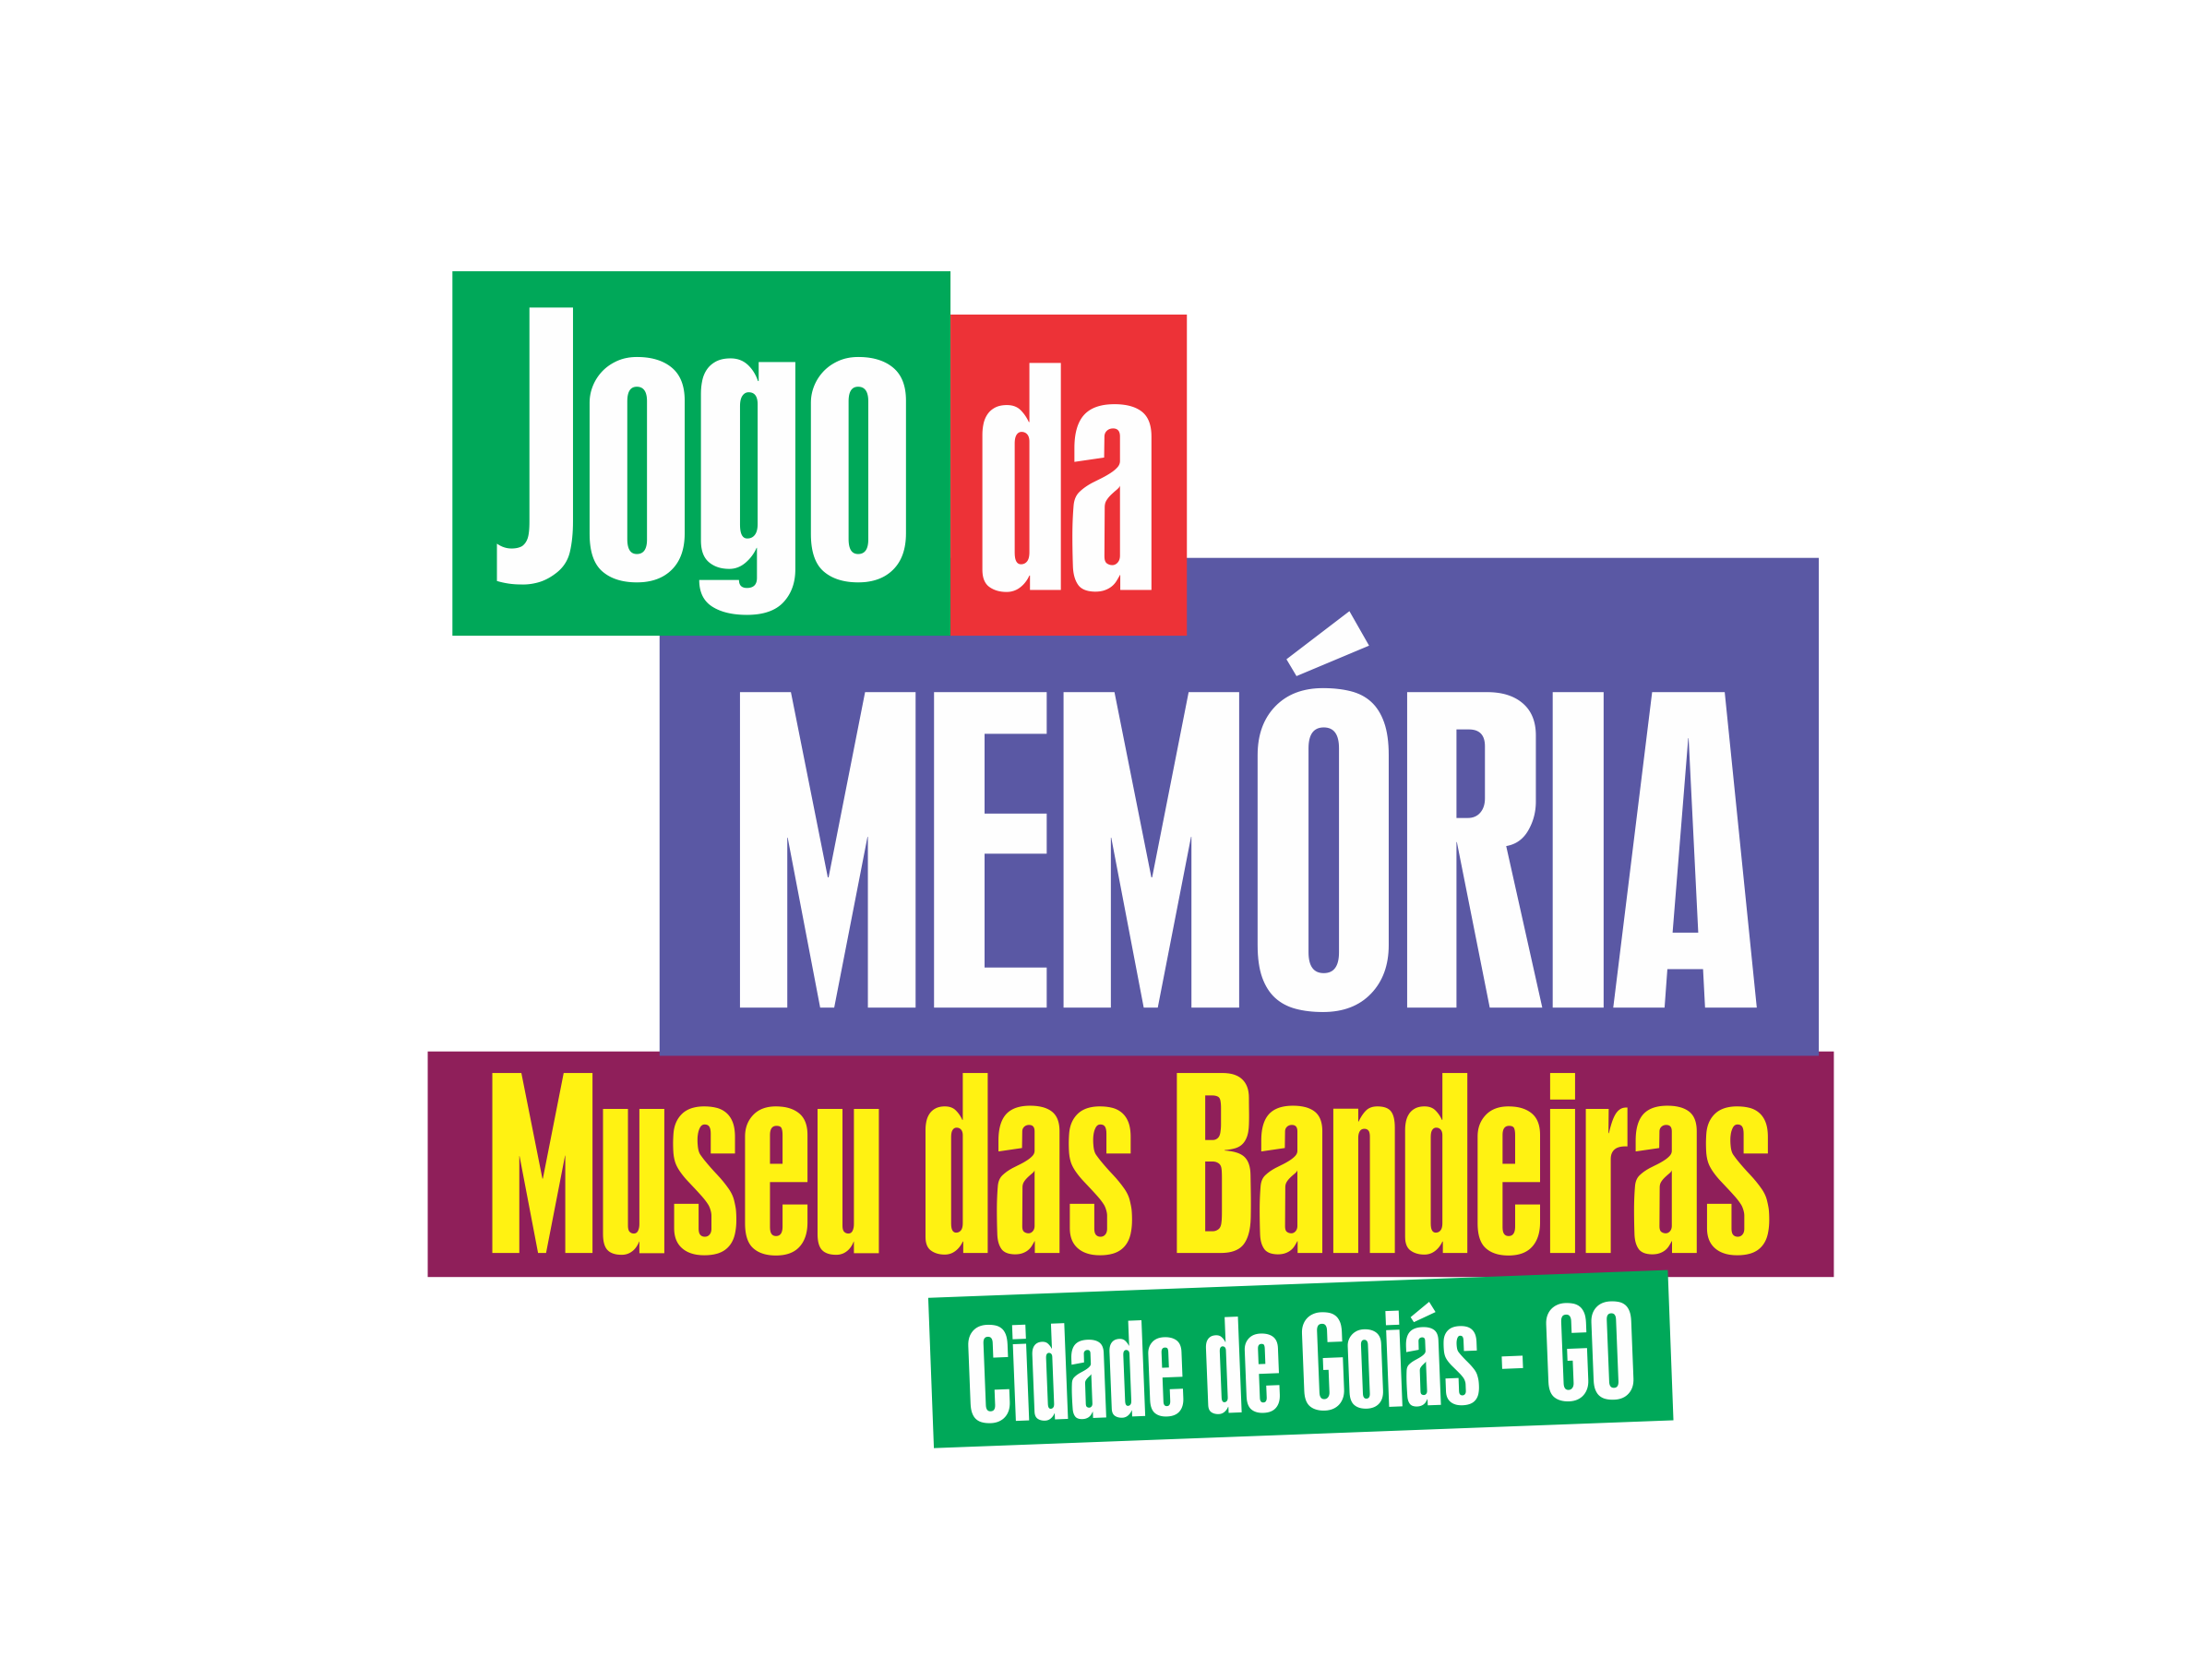 Jogo de Memória Museu das Bandeiras – Núcleo de Produção Digital